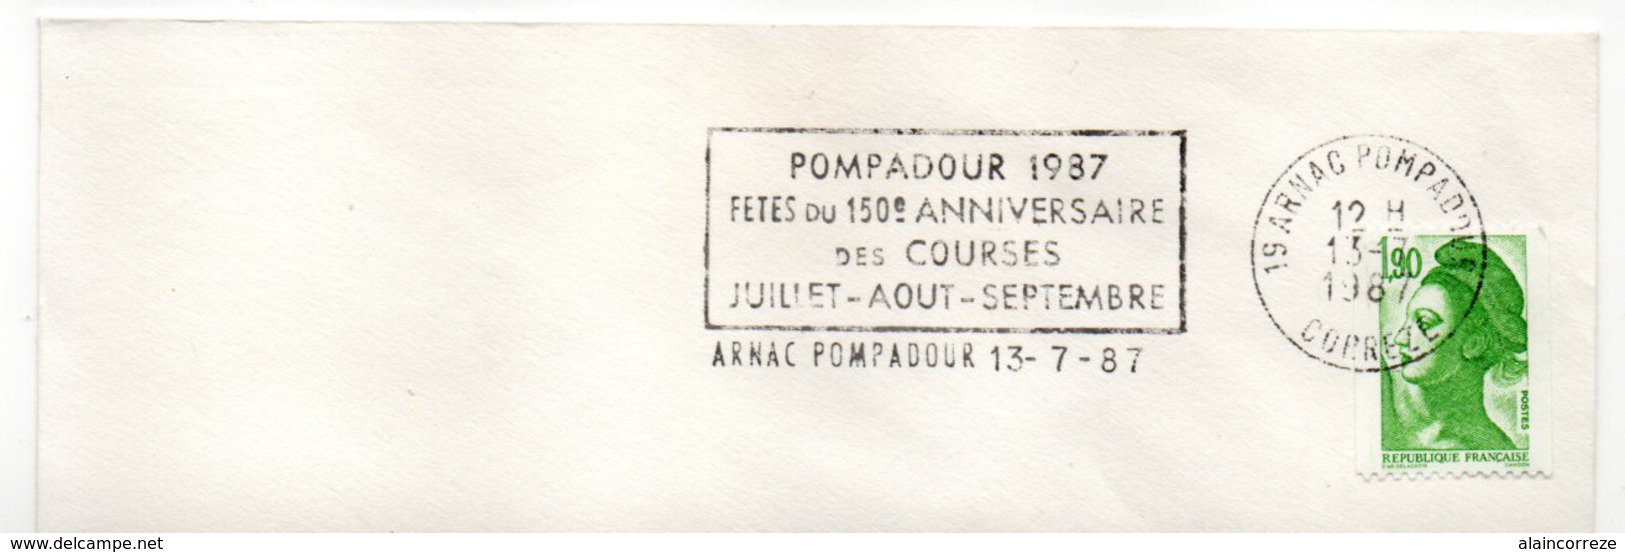 Corrèze Flamme Temporaire Arnac Pompadour 1987 Fête Du 150e Anniversaire Des Courses. Thème Course Hippique - Oblitérations Mécaniques (flammes)